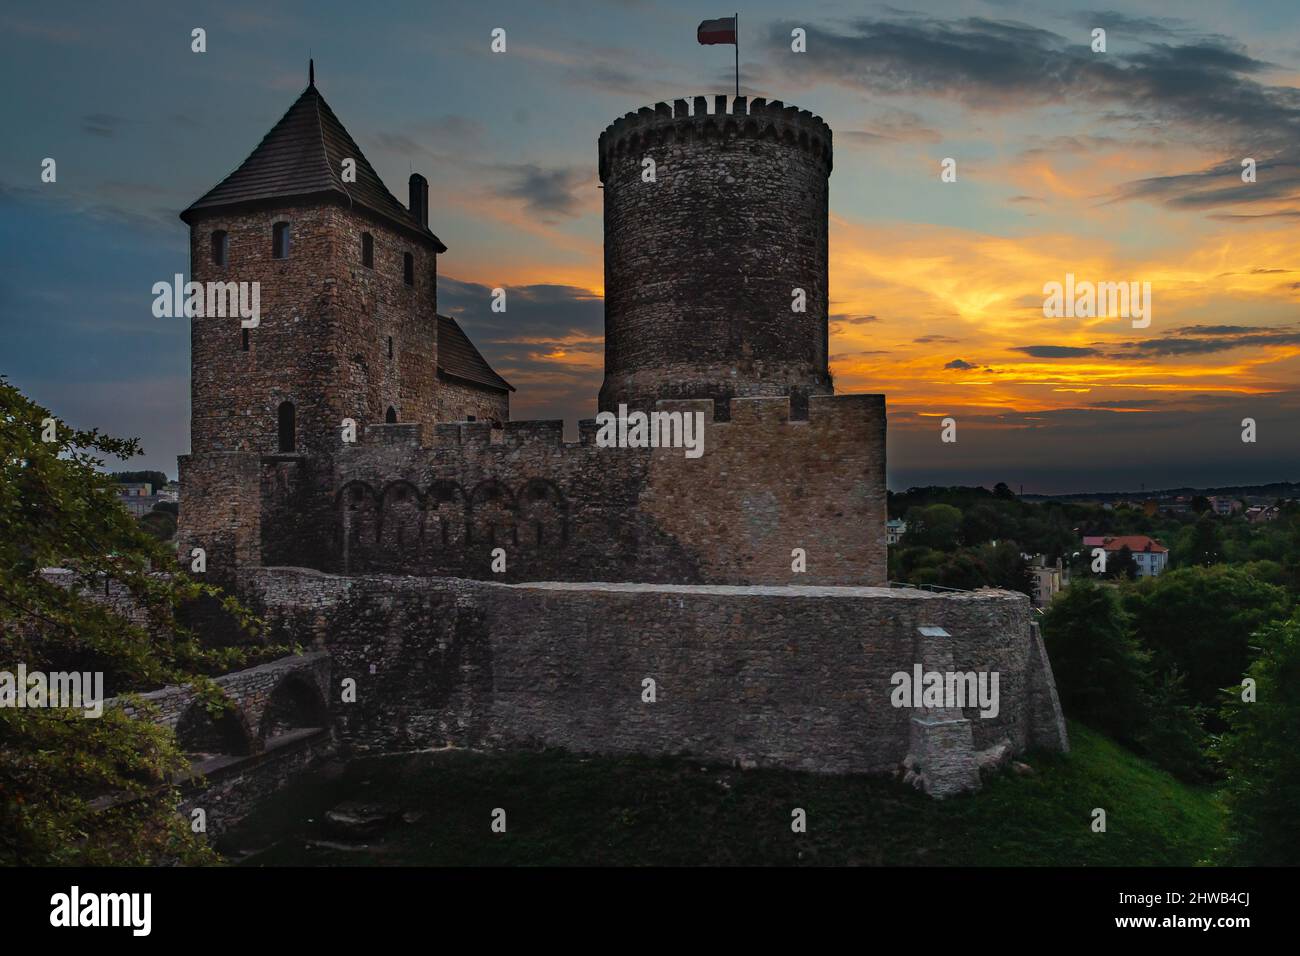 Zamek W Będzinie podczas zachodzącego słońca-Pologne Banque D'Images